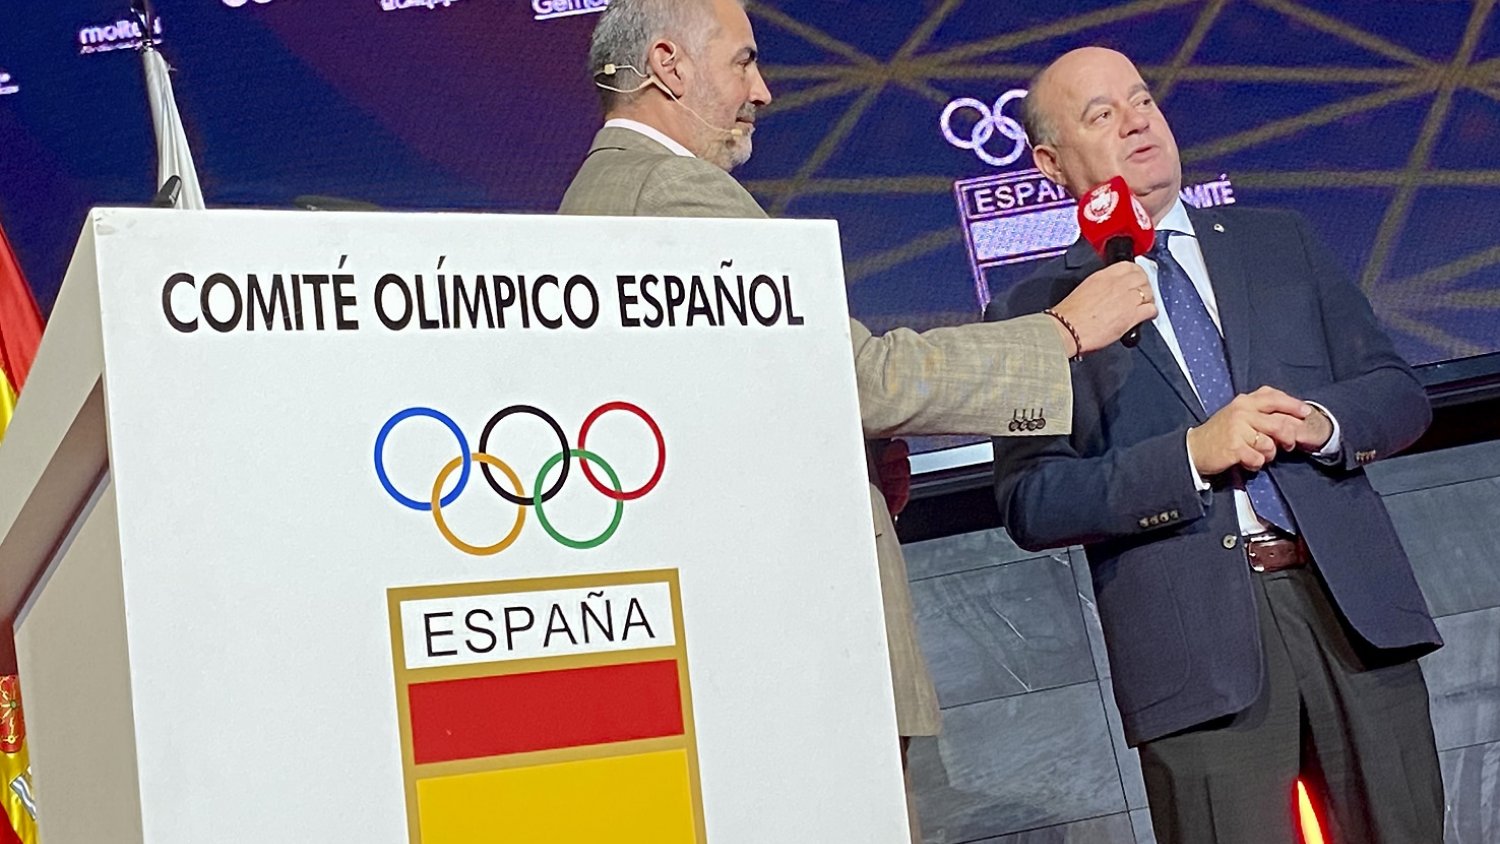 Antequera será distinguido por el Comité Olímpico Español con la Placa Olímpica al Mérito Deportivo